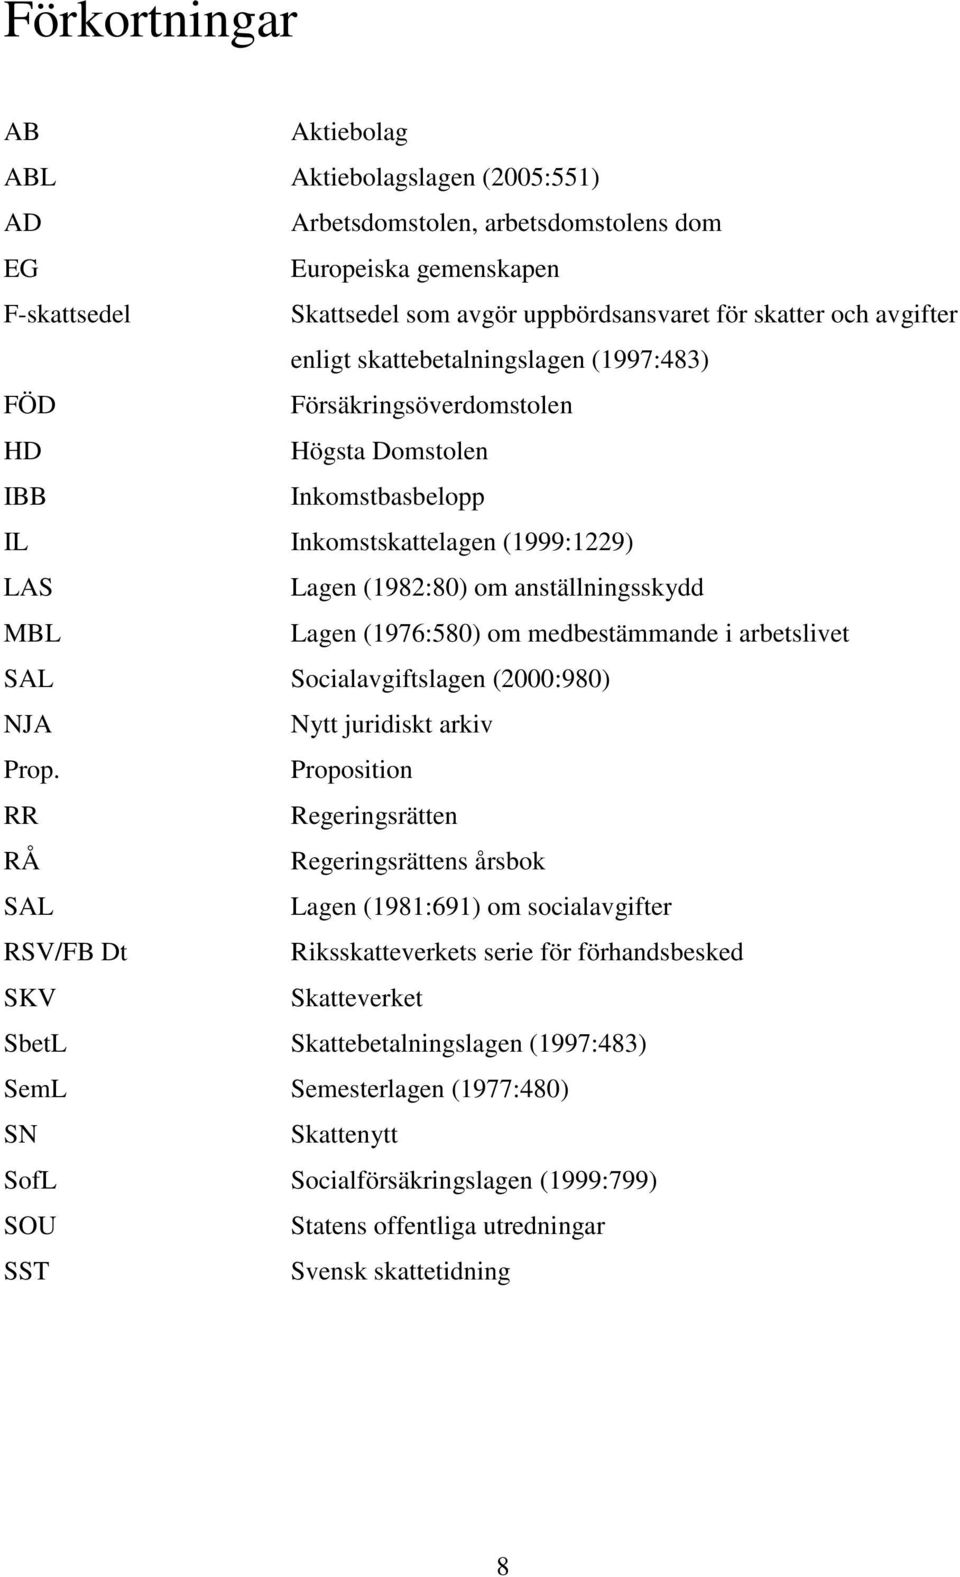 Lagen (1976:580) om medbestämmande i arbetslivet SAL Socialavgiftslagen (2000:980) NJA Nytt juridiskt arkiv Prop.